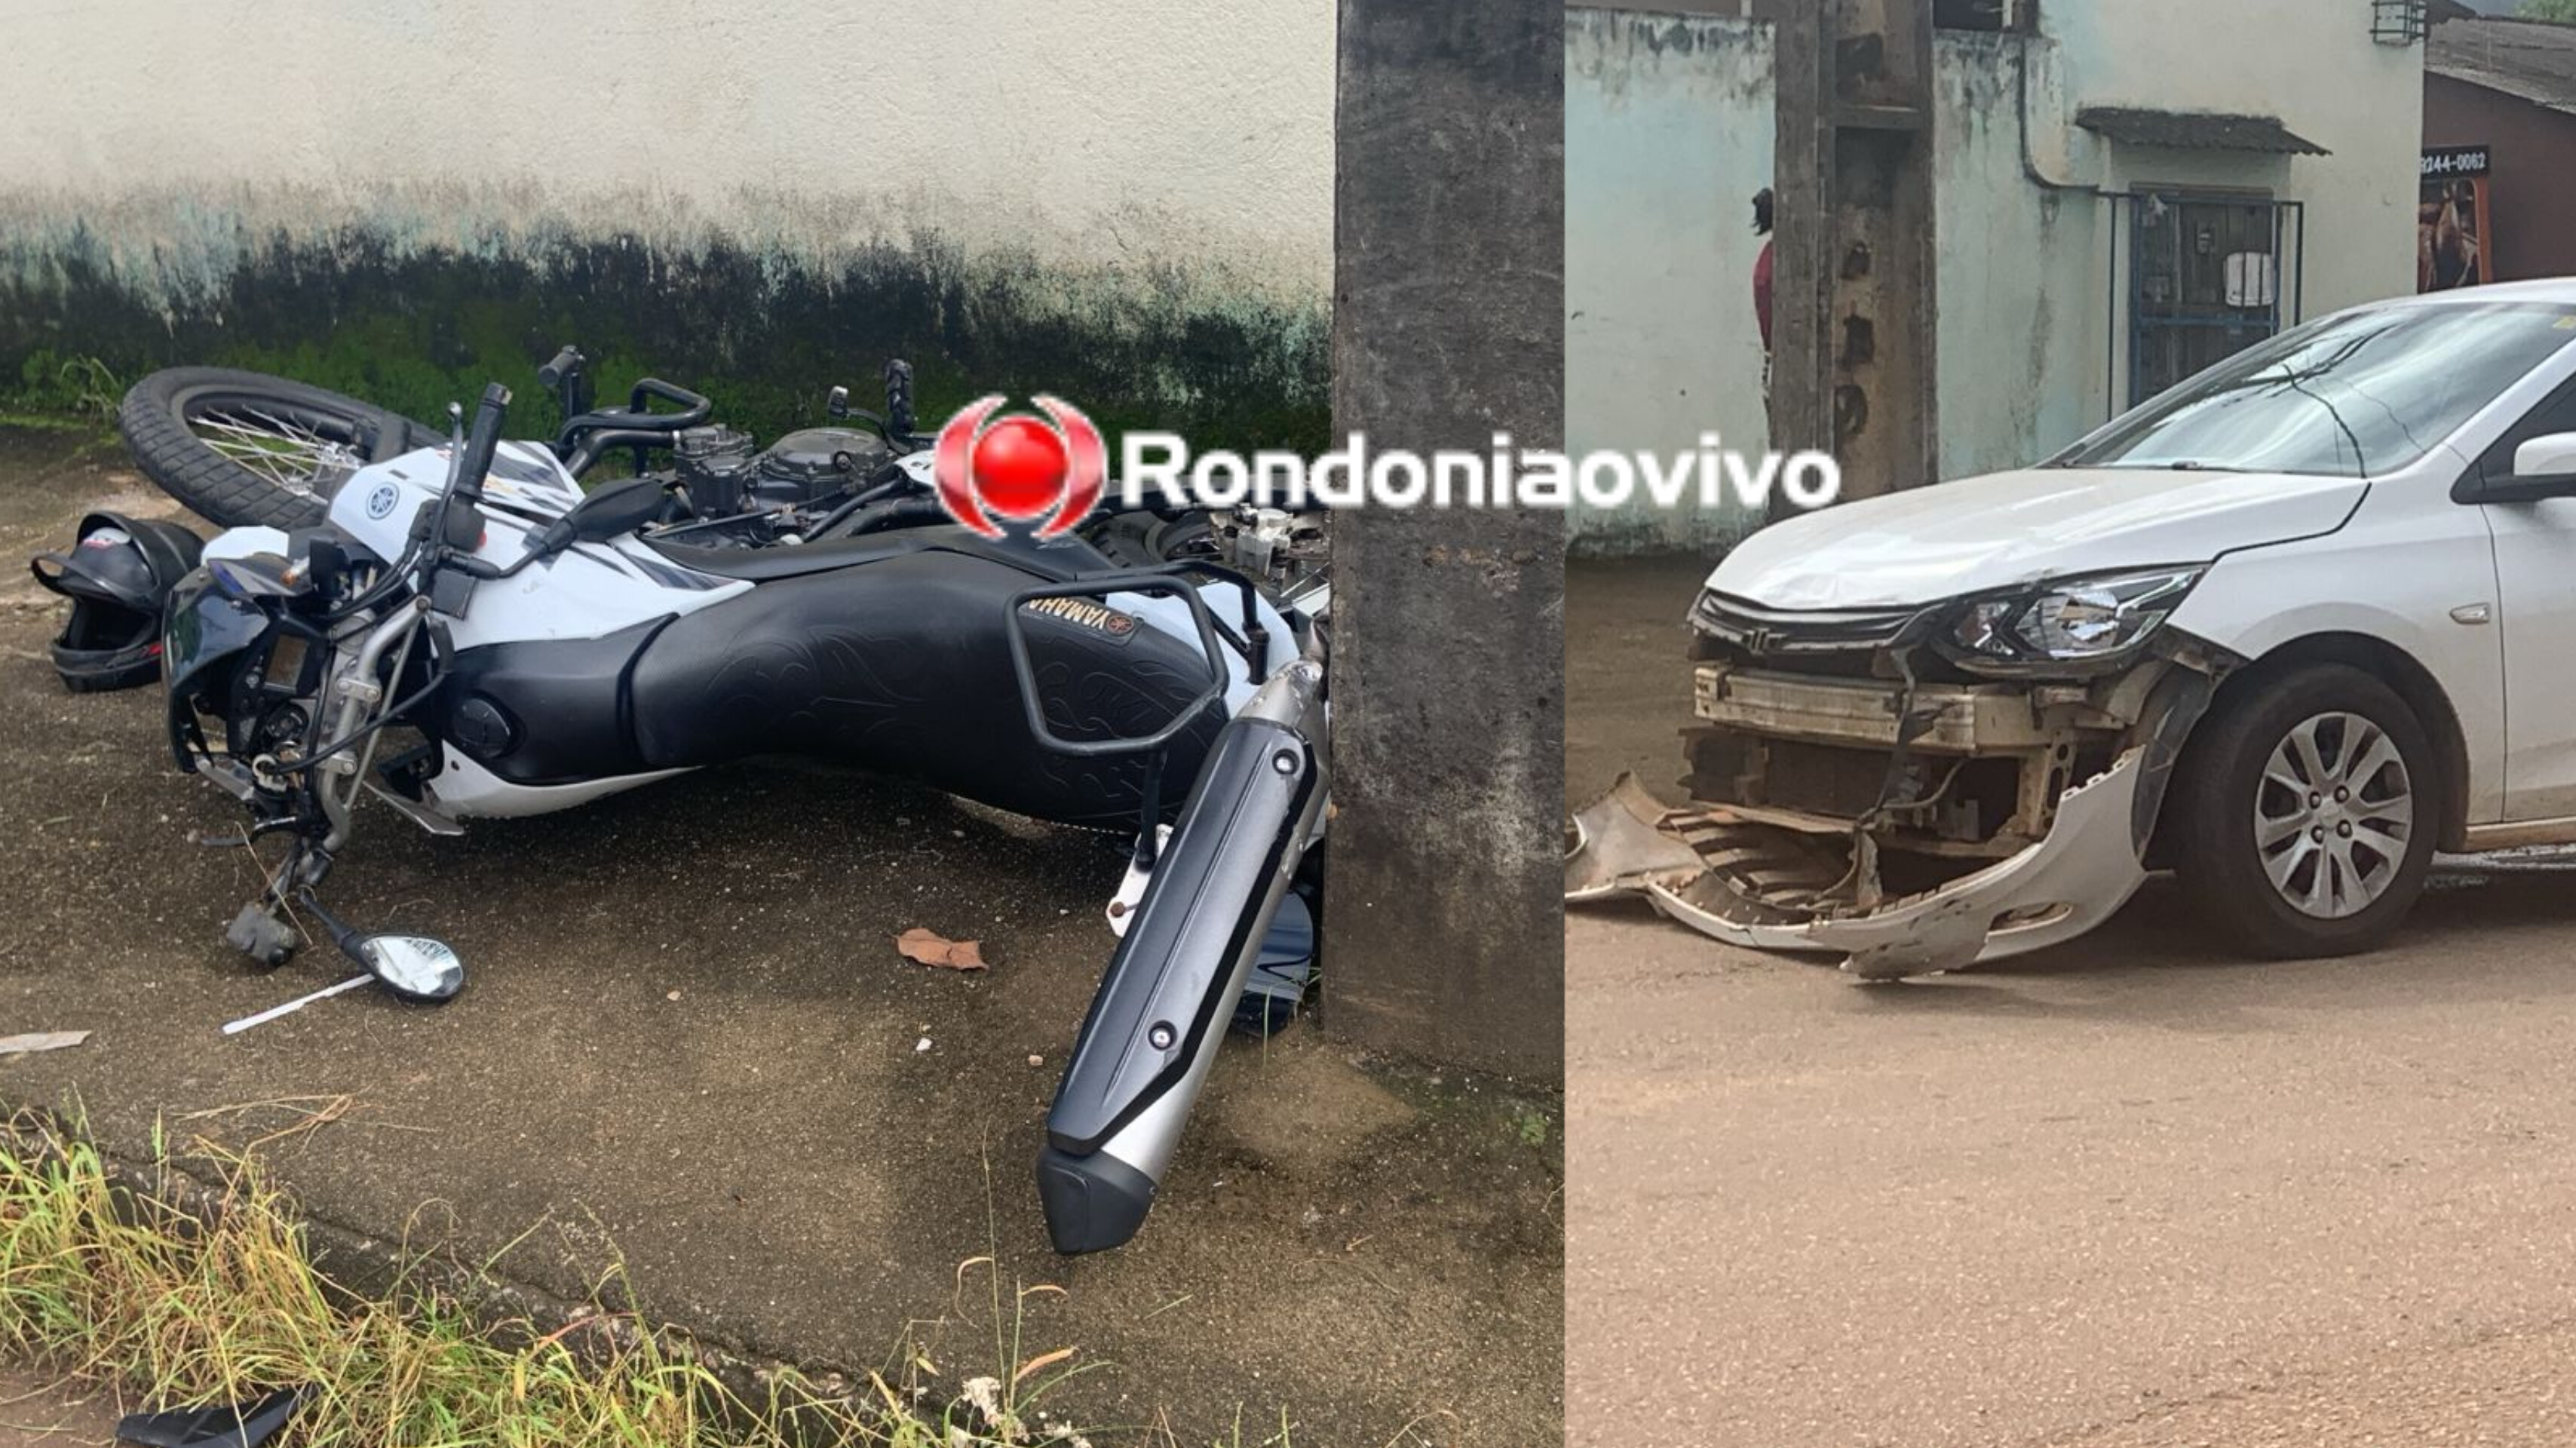 NA ANGICO: Motocicleta XTZ se choca contra poste após ser atingida por carro Onix 